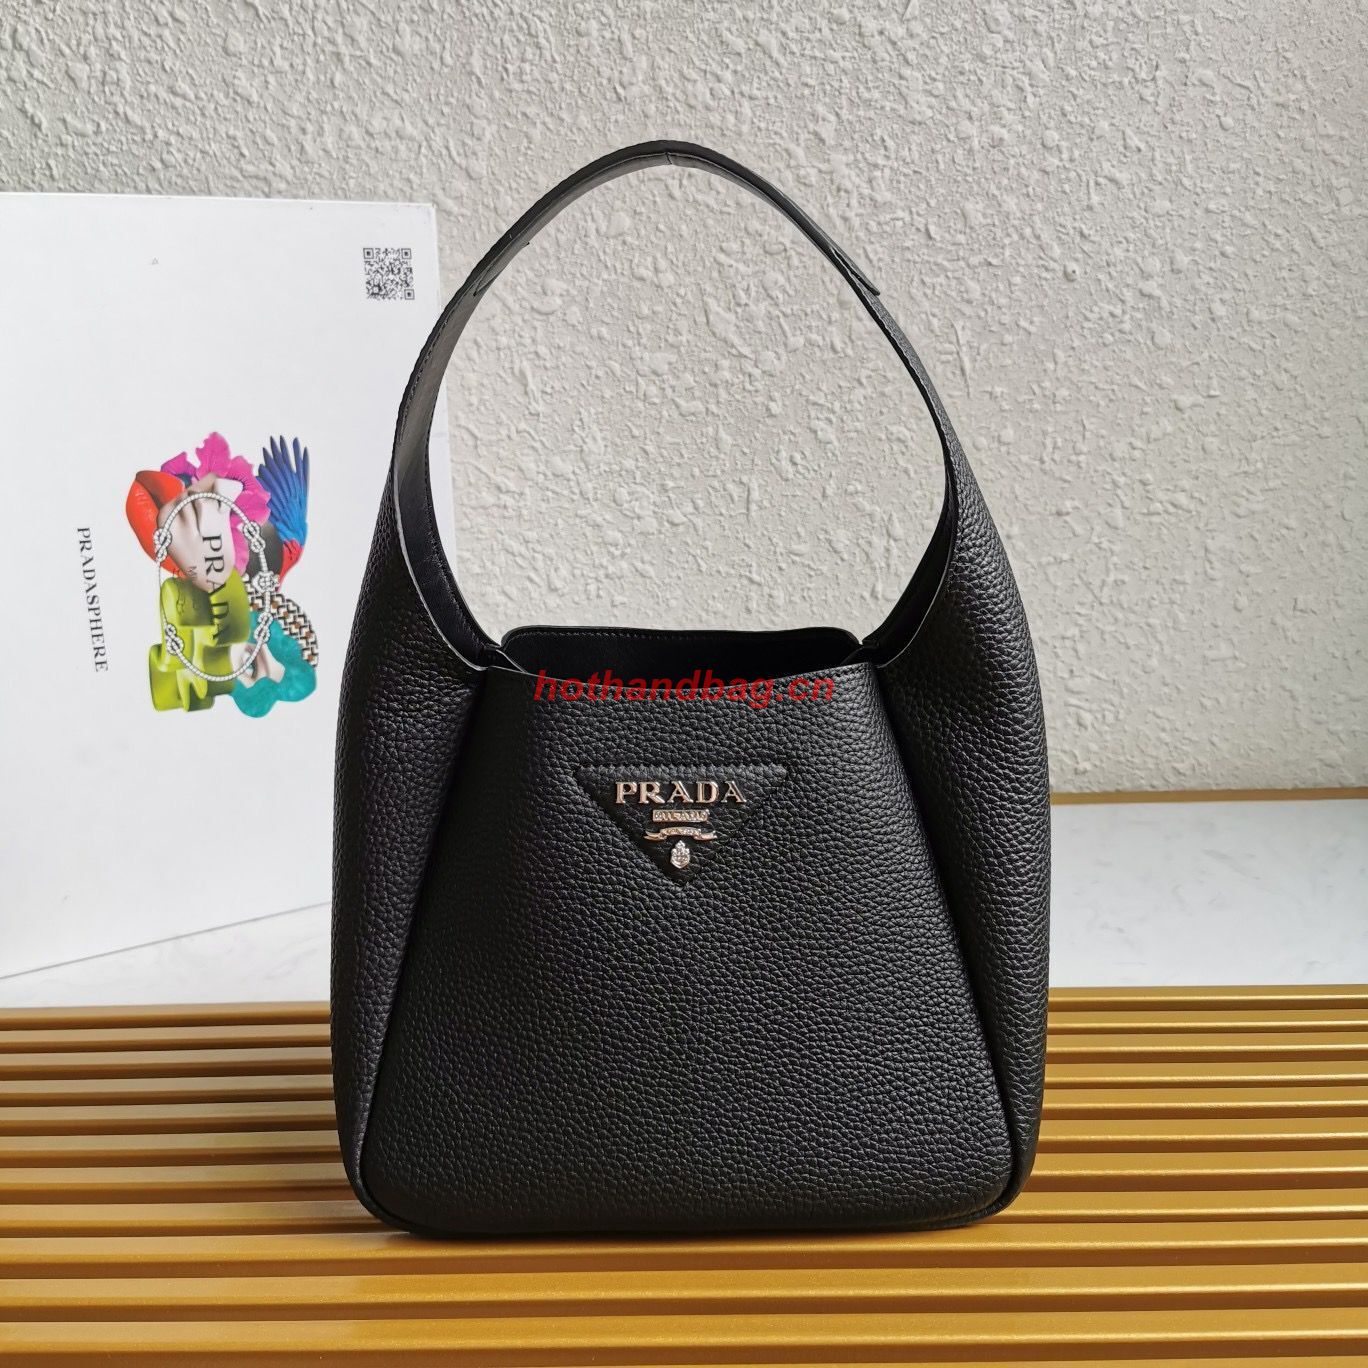 Prada original leather tote bag 1BC127 black